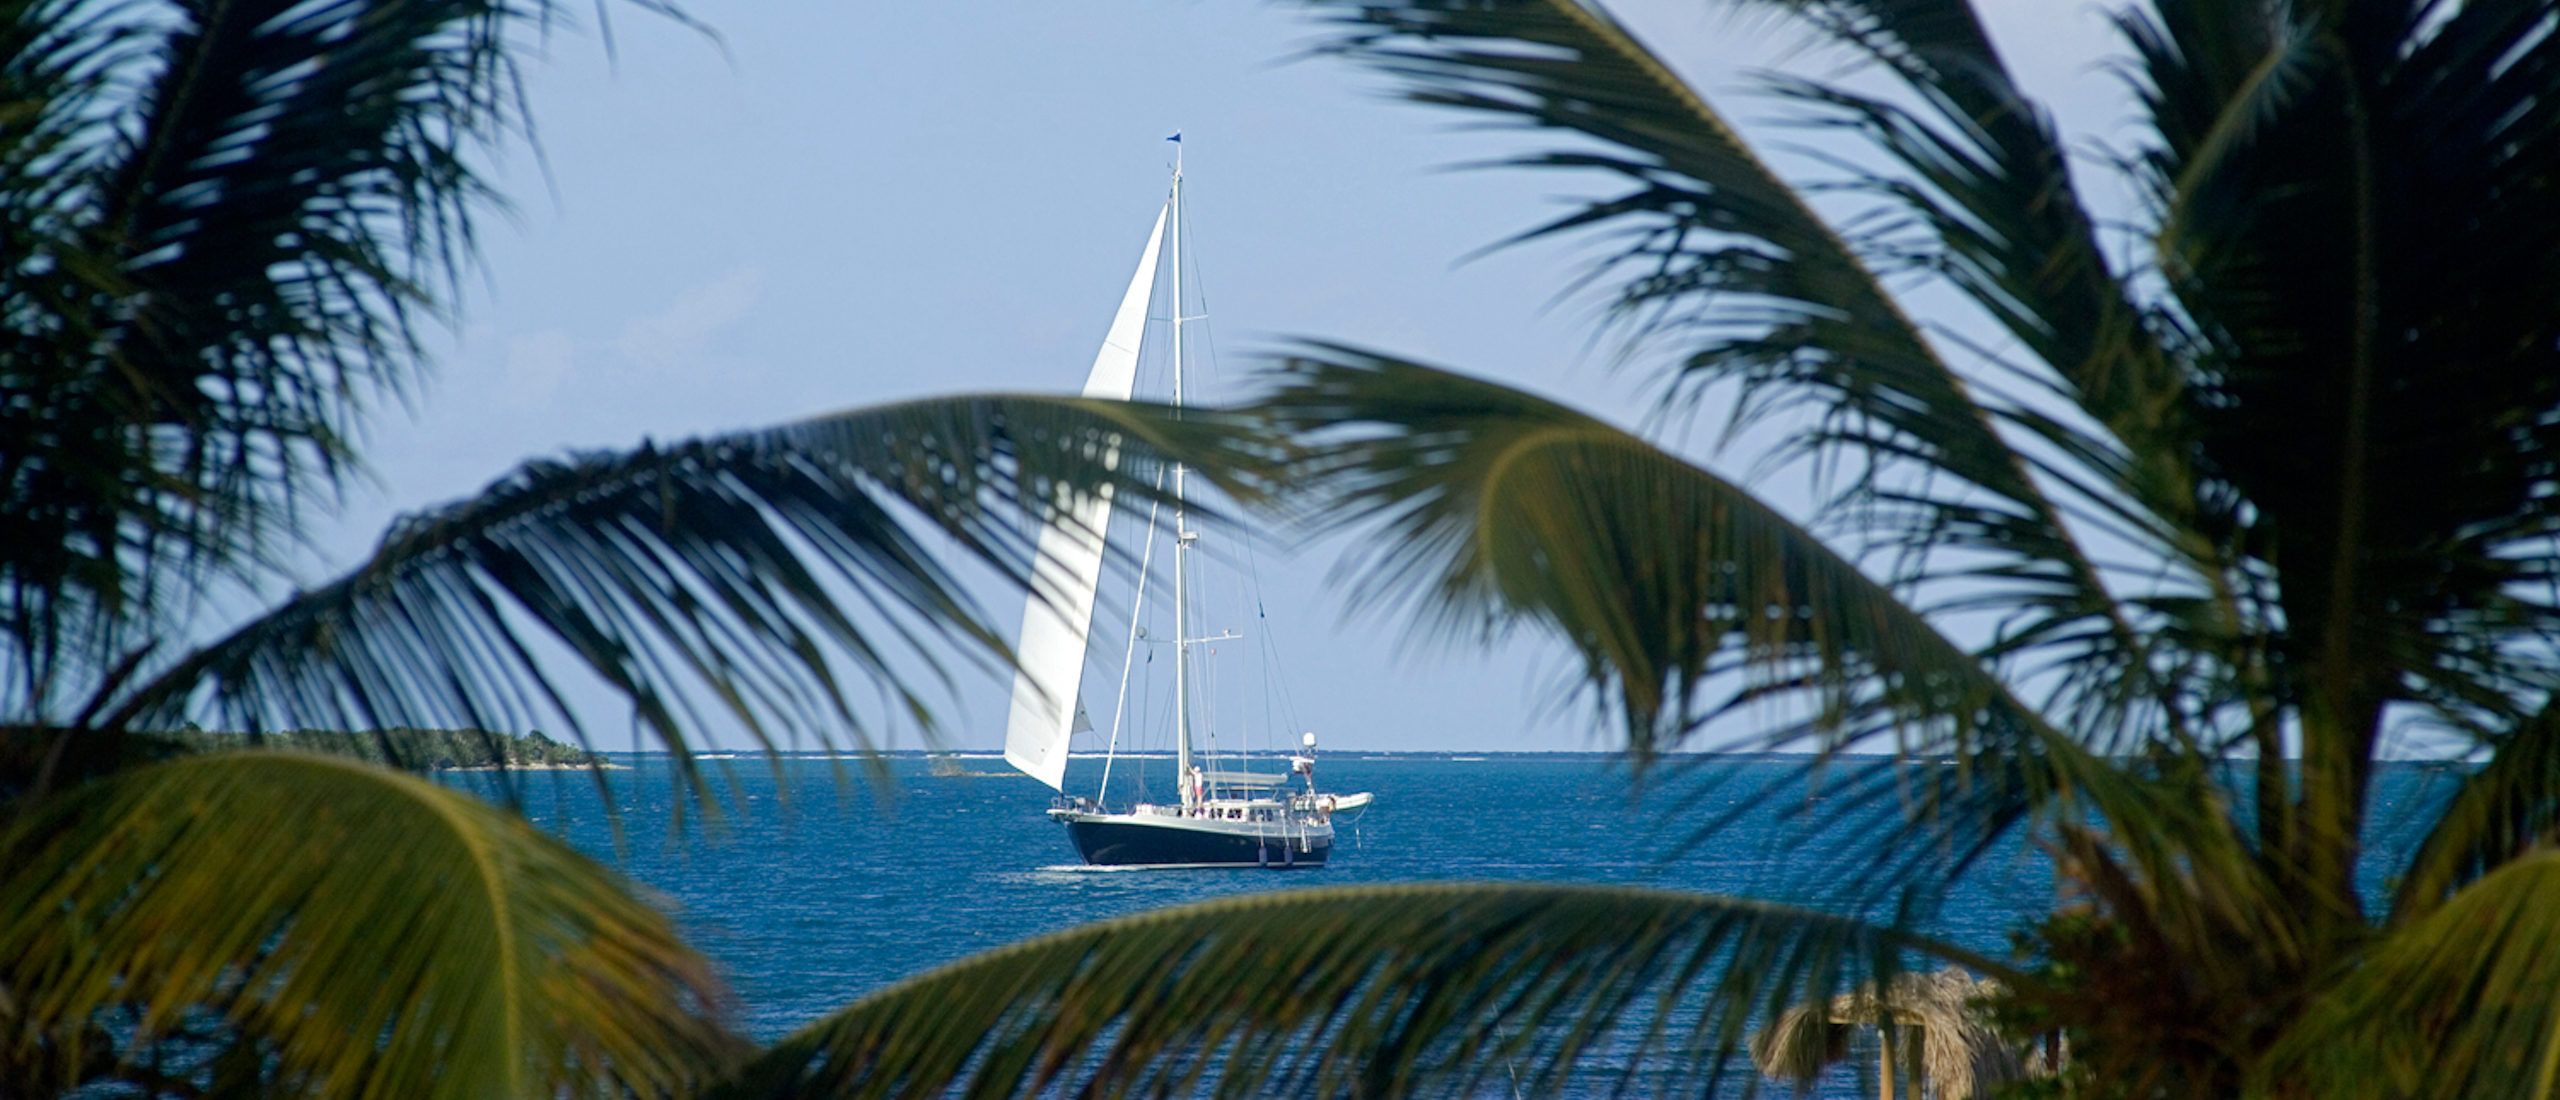 Lola E - Sailing - Boat - Palm trees